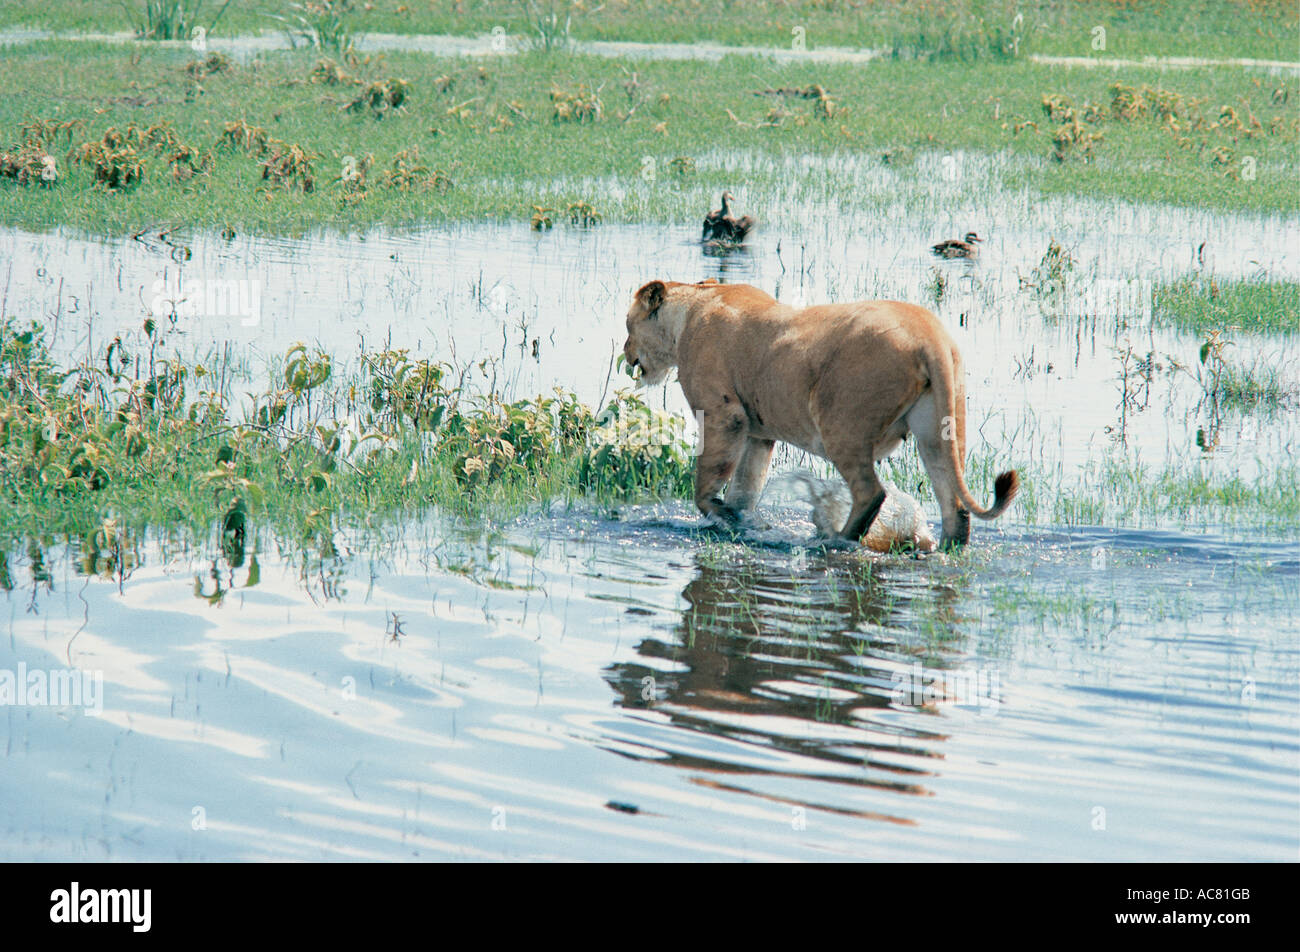 La lionne se perdre dans des piscines après de fortes pluies le Masai Mara National Reserve Kenya Afrique de l'Est Banque D'Images